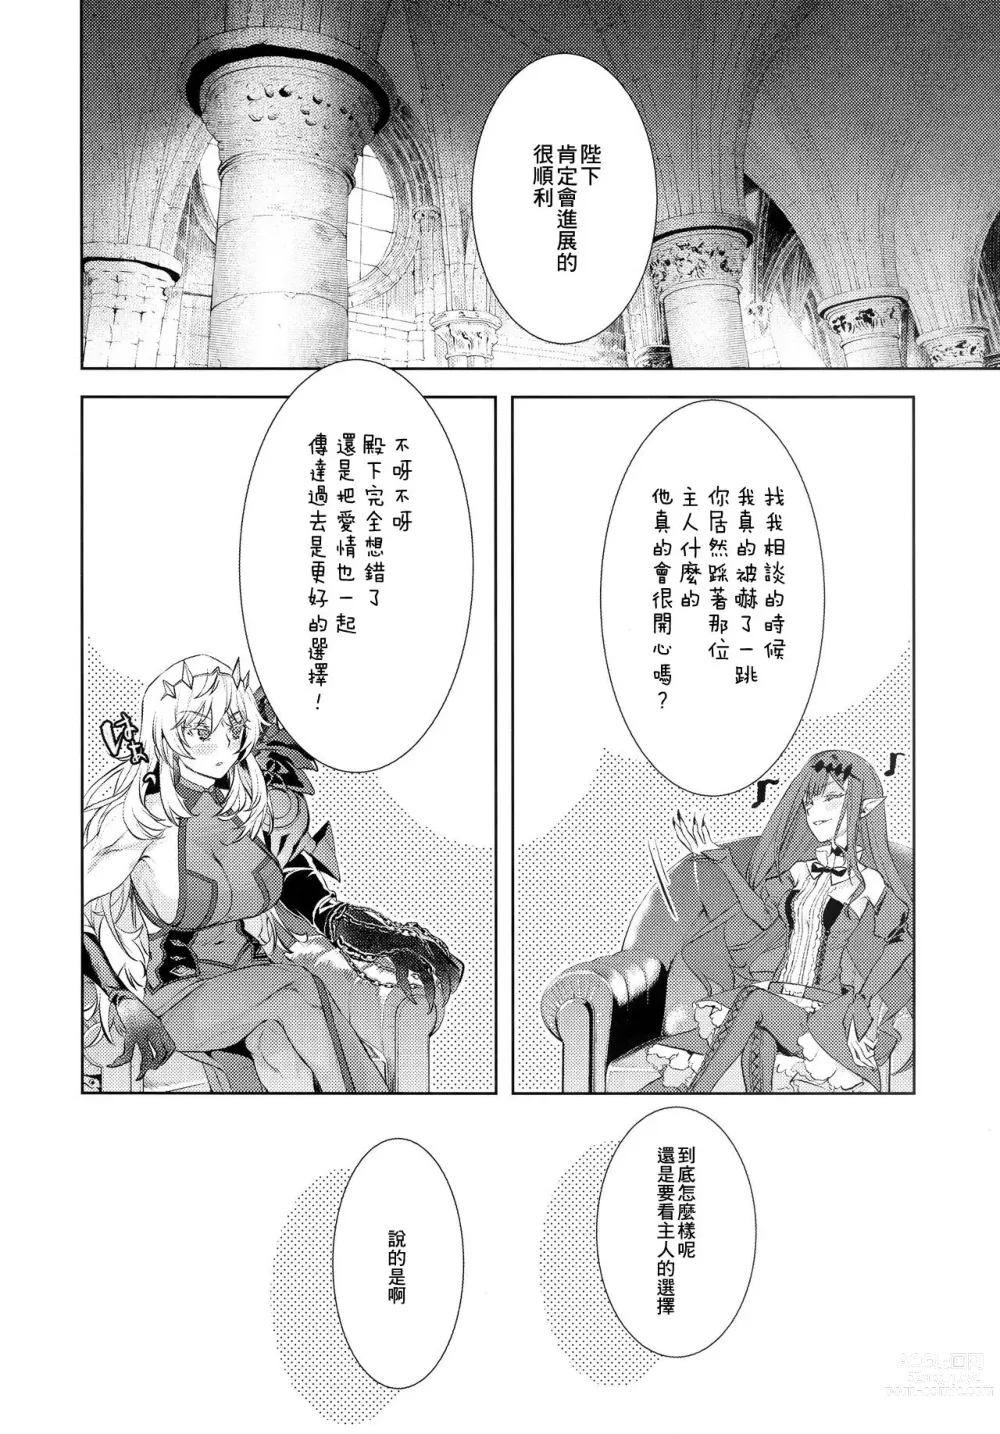 Page 11 of doujinshi Joouheika no Seiteki Shinan